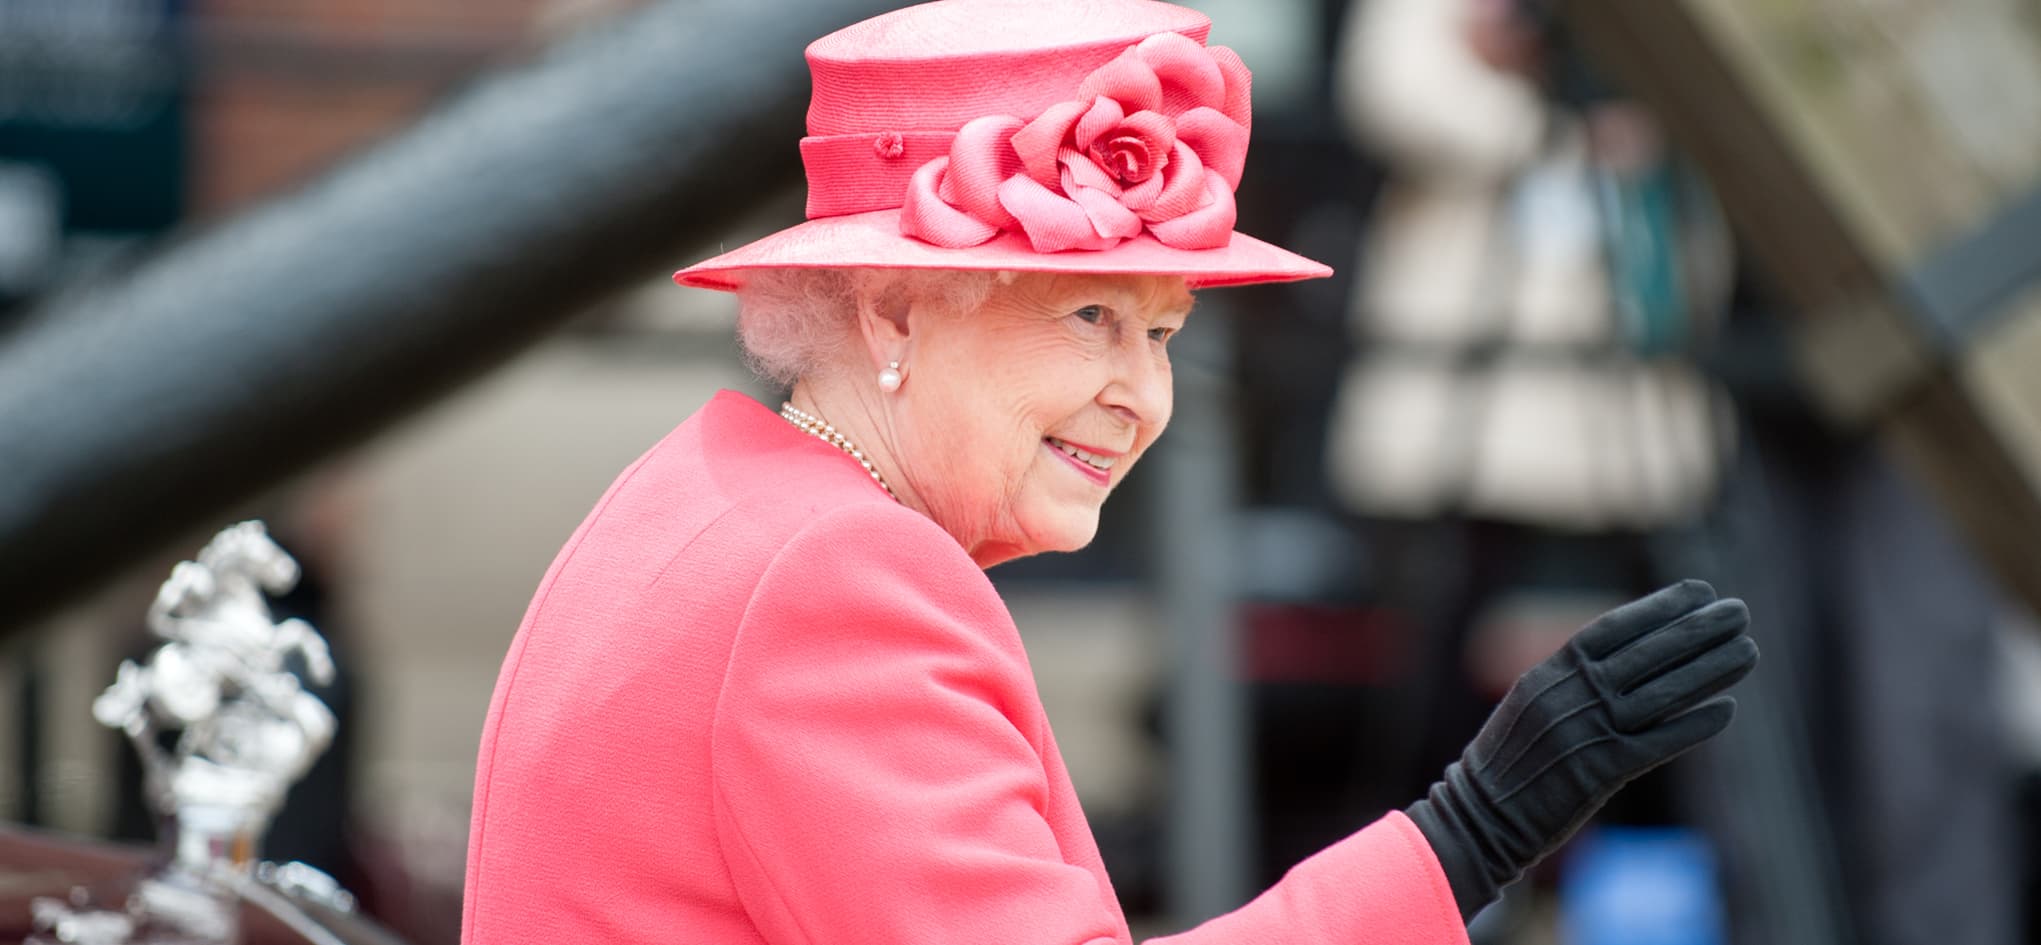 Her Majesty Queen Elizabeth II, 1926 - 2022